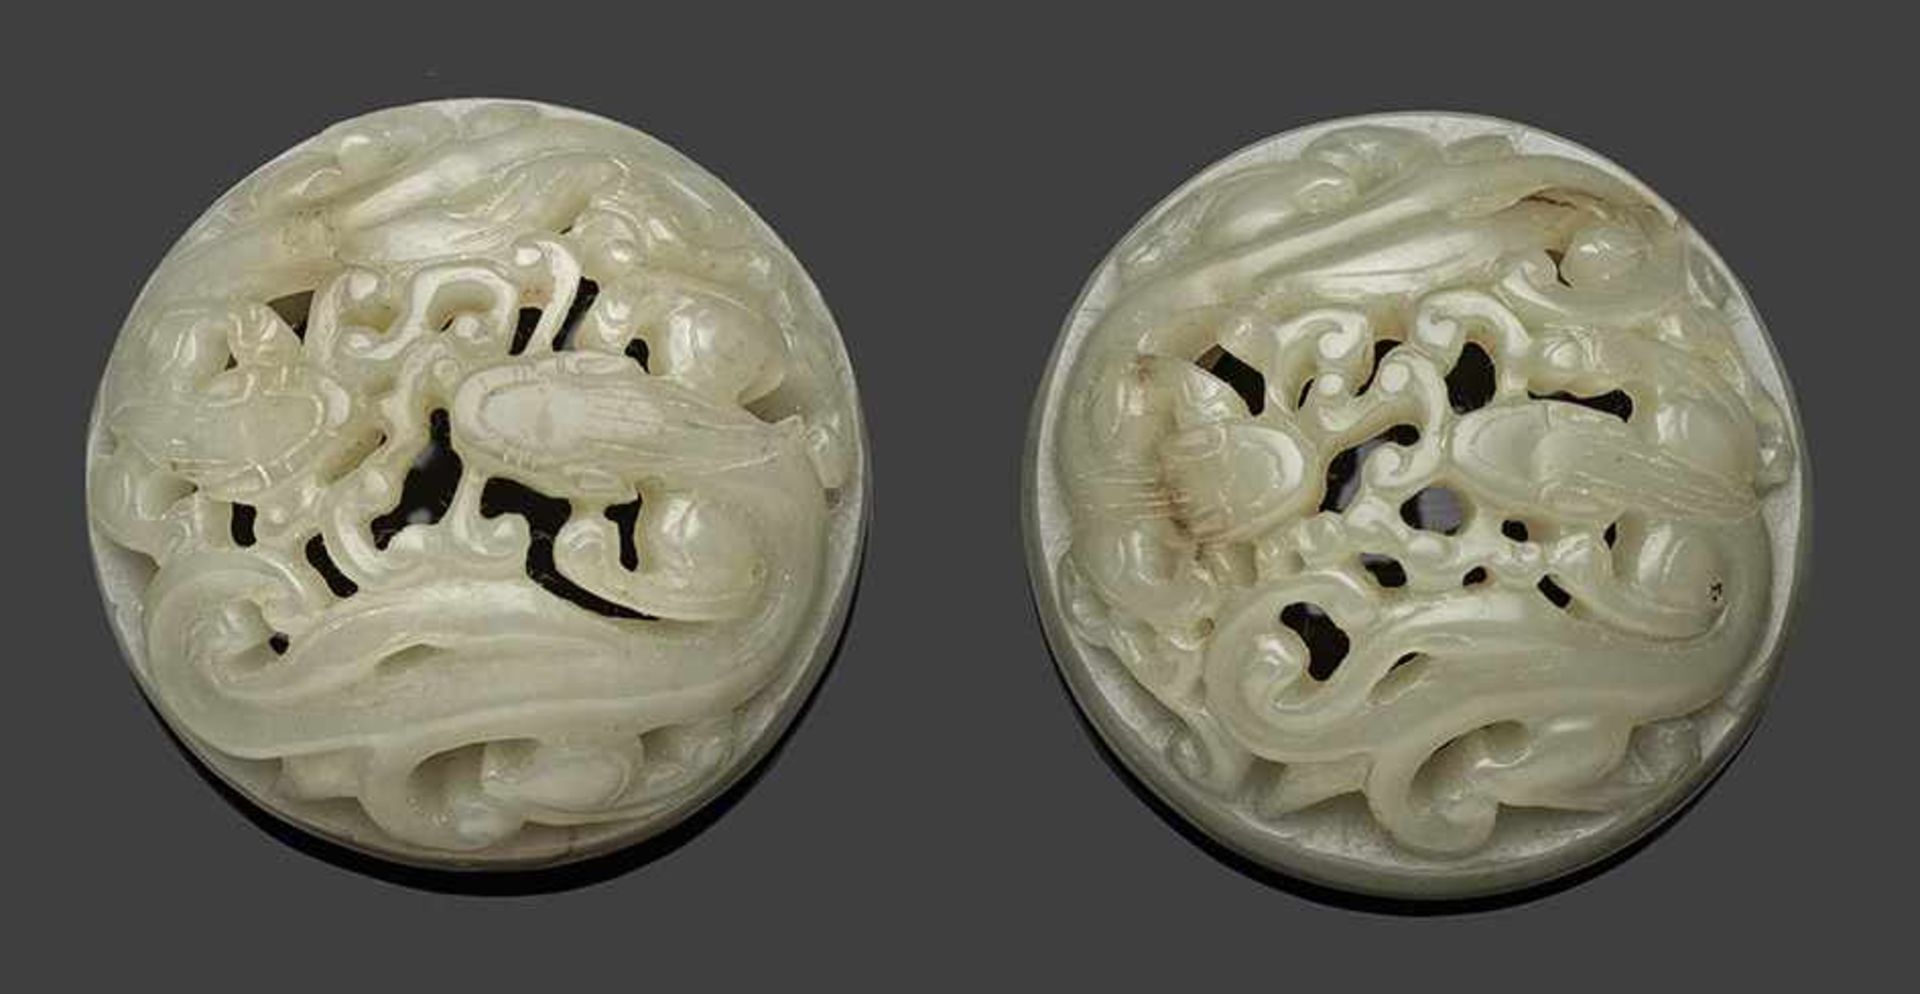 Paar JadeschnitzereienHelle, seladongrüne Nephrit-Jade. Runde, gewölbte Form. Feine, geschnitzte